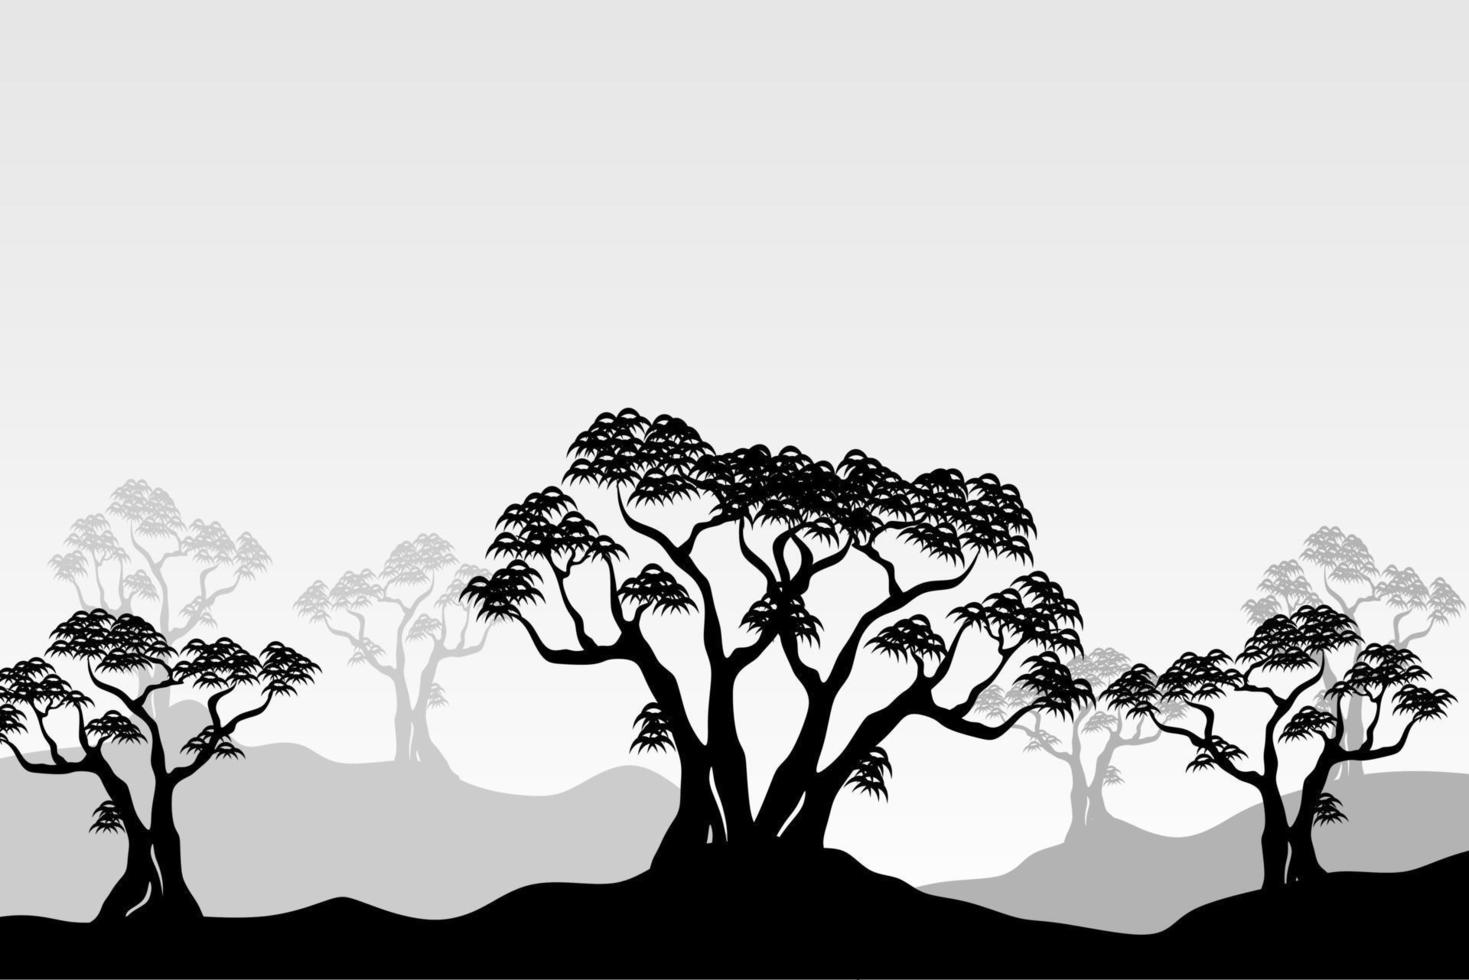 Panoramalandschaft der Mangrovenbaumsilhouette in Schwarz und Weiß vektor